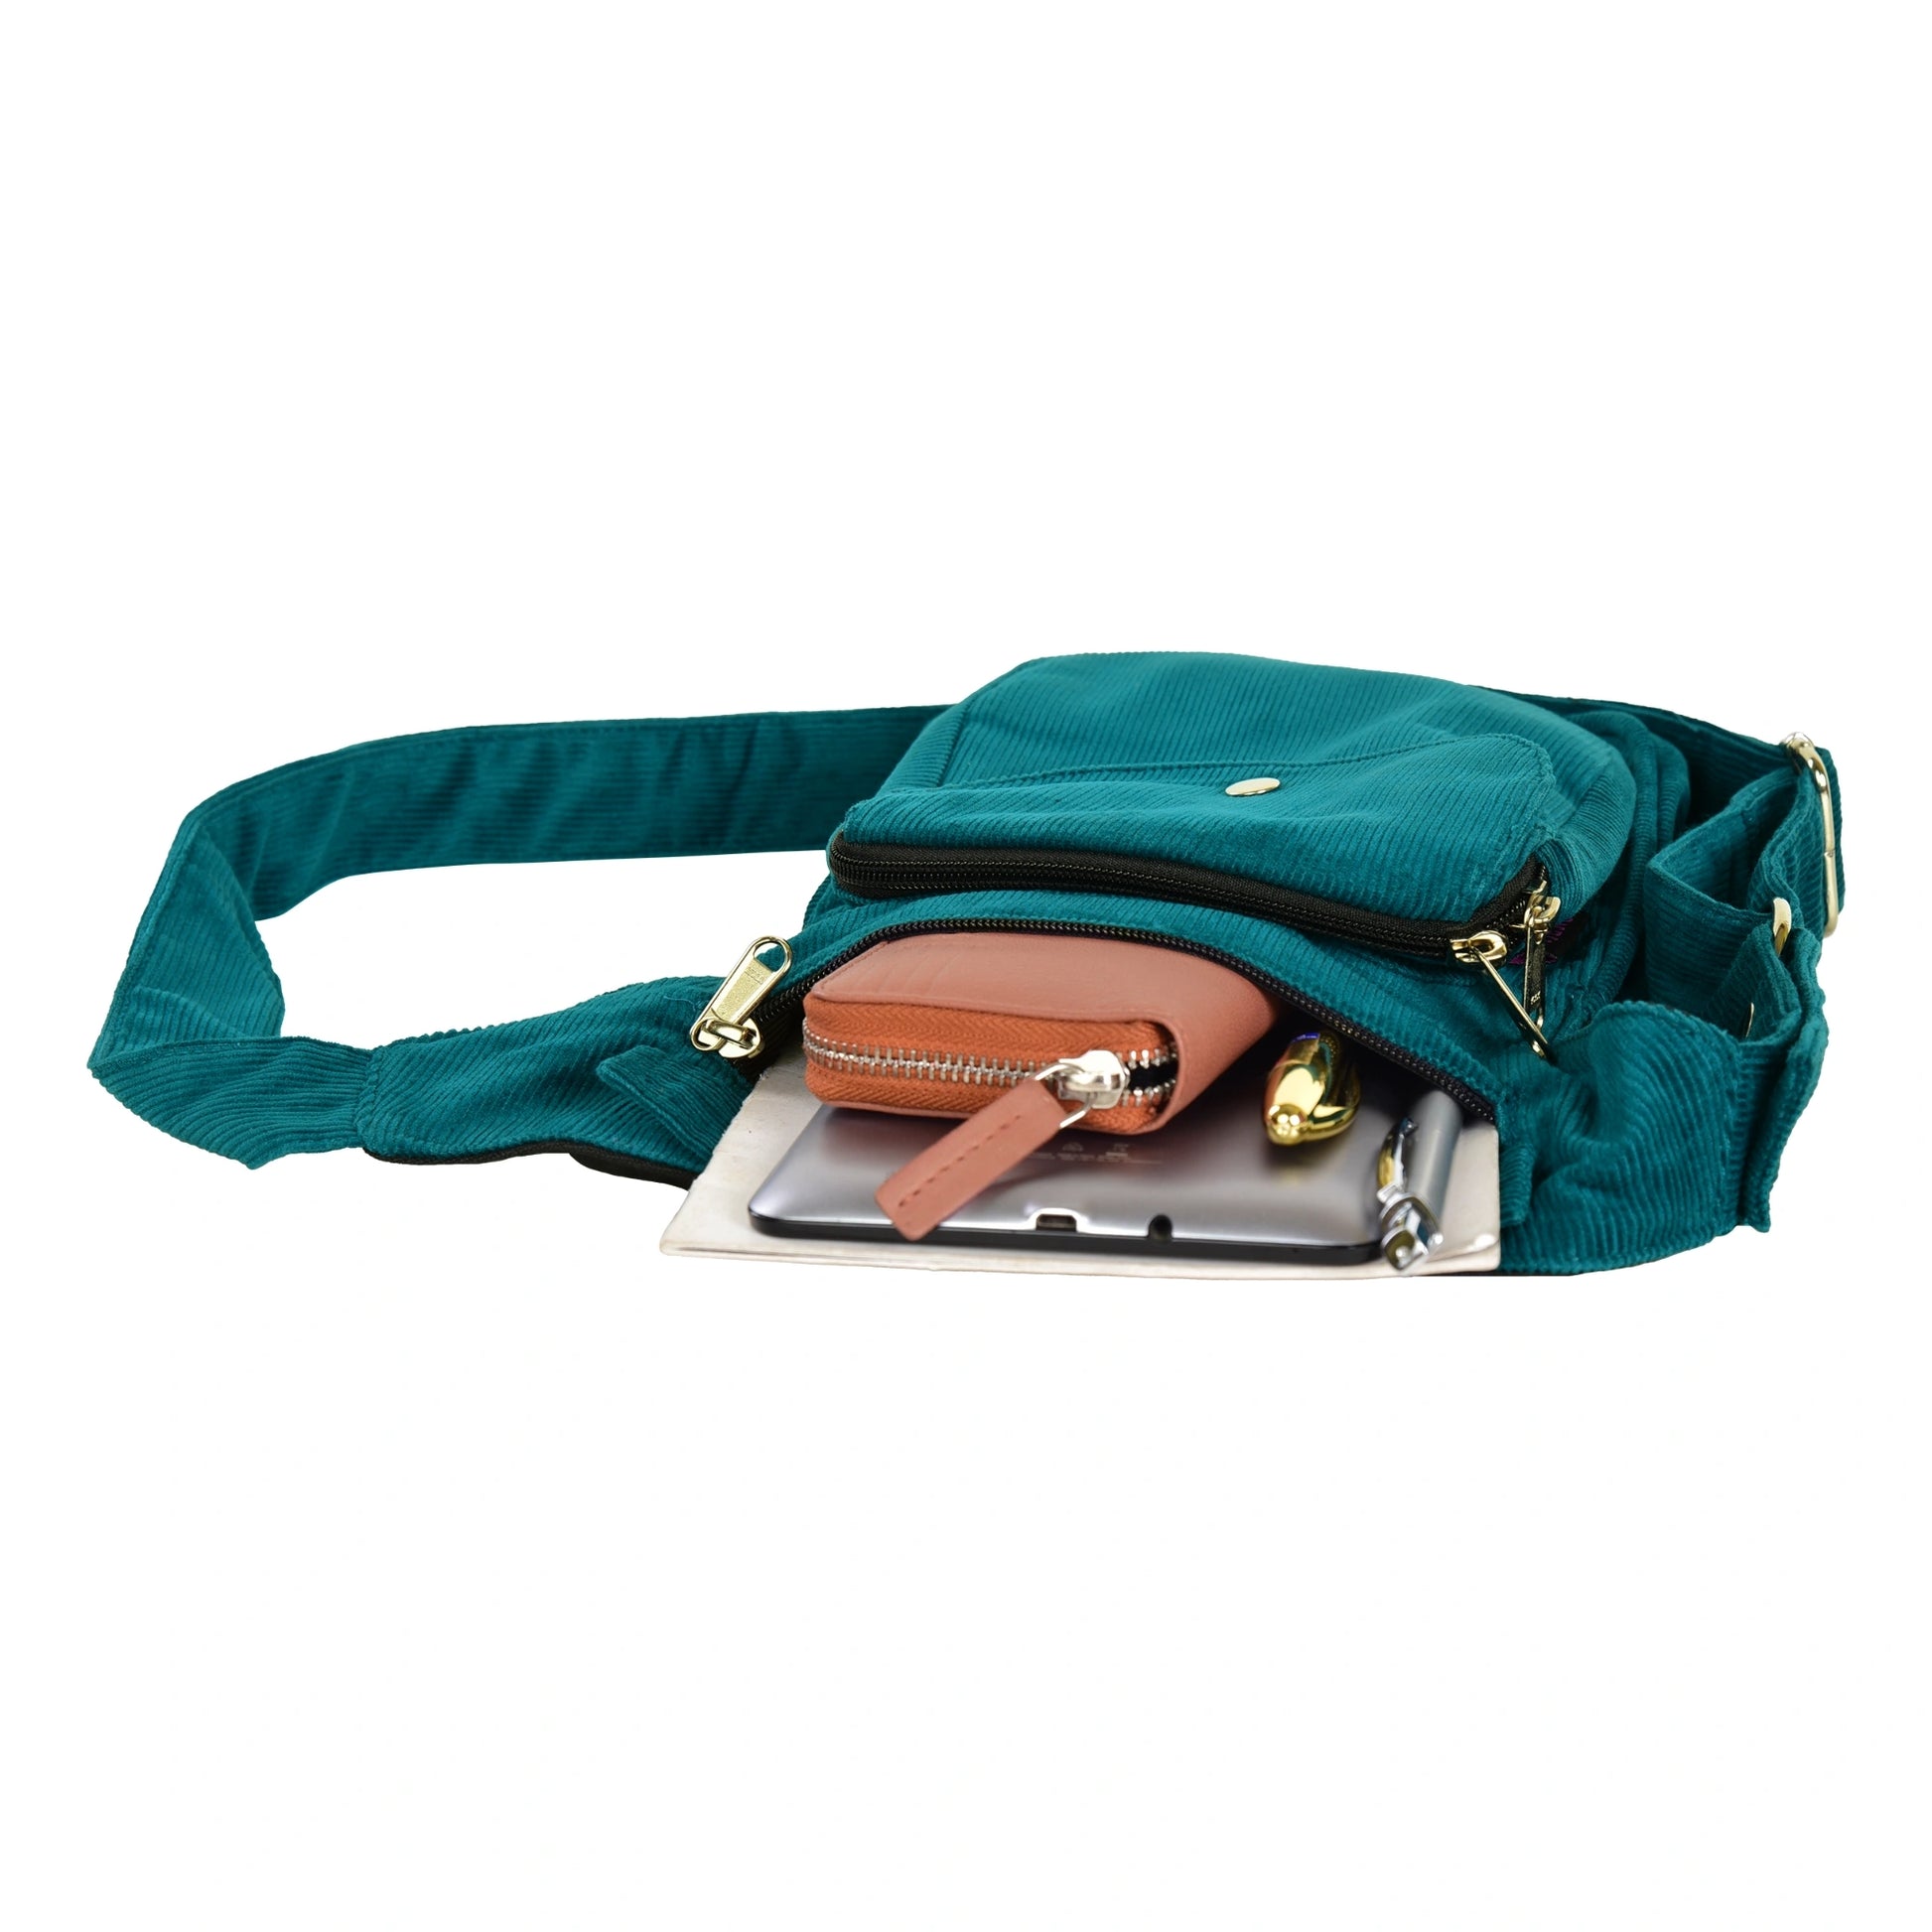 Gürteltasche, Gassi-Tasche aus Cord Seegrün. Das Hauptfach und vordere Reißverschlussfach bietet Platz für Handy, Portemonnaie und andere Kleinigkeiten.